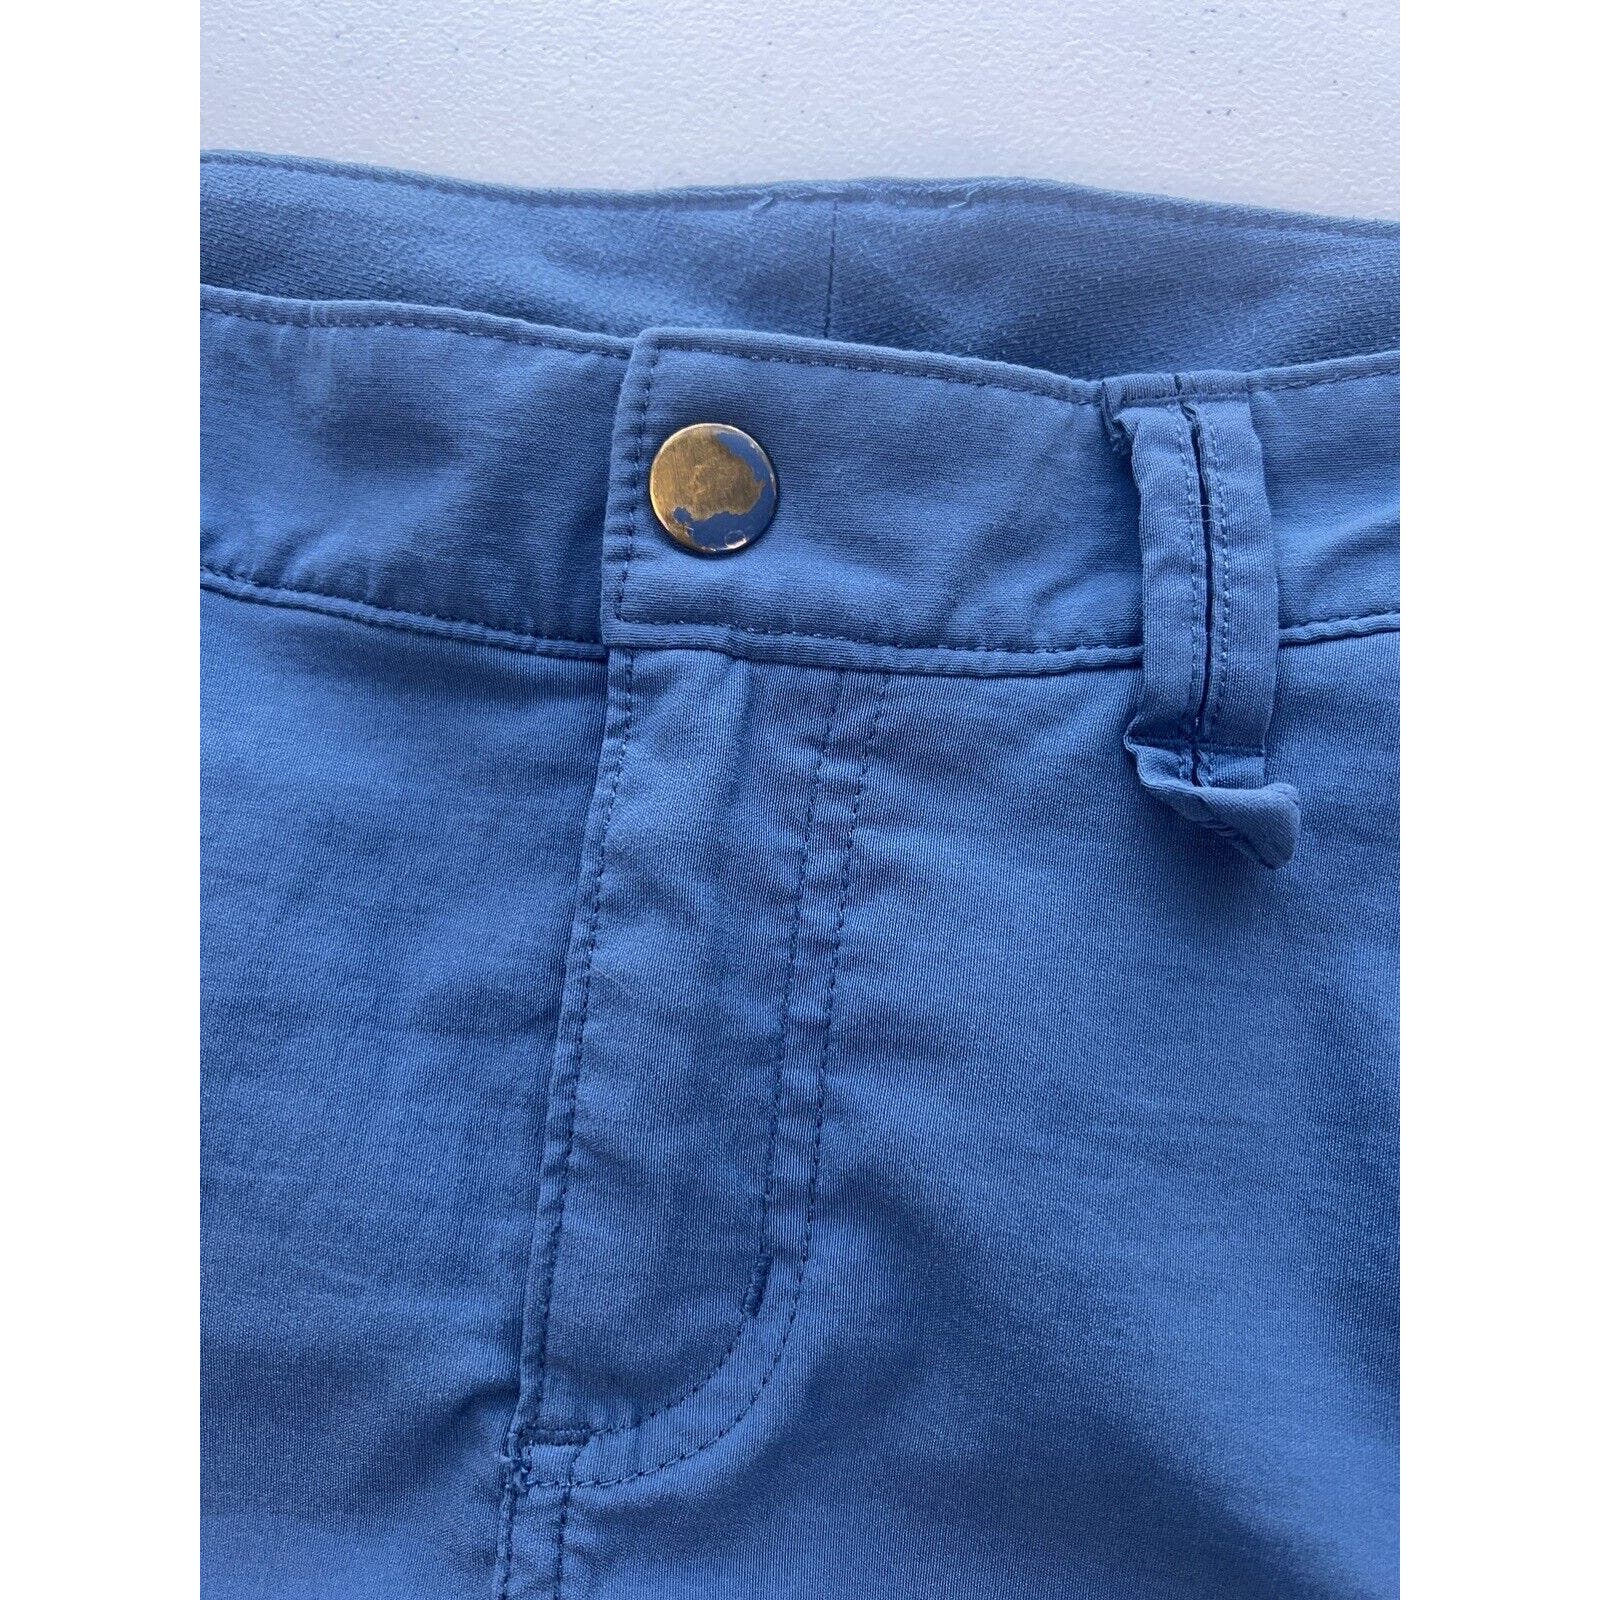 Duluth Trading Co. Cargo Skort Skirt Women’s Size 6 Nylon Outdoor Hiking Blue